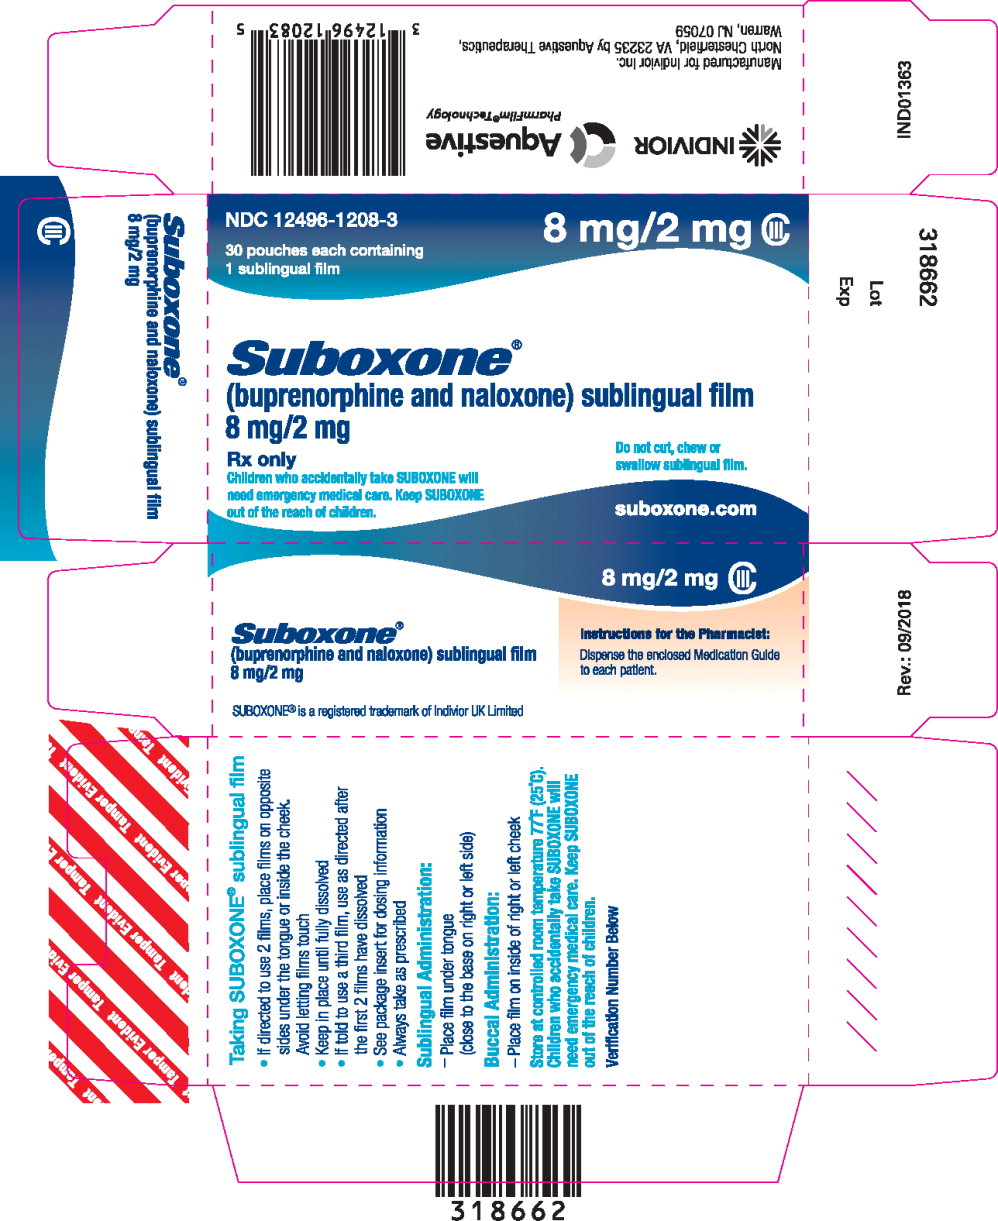 Principal Display Panel – 8 mg Carton Label
